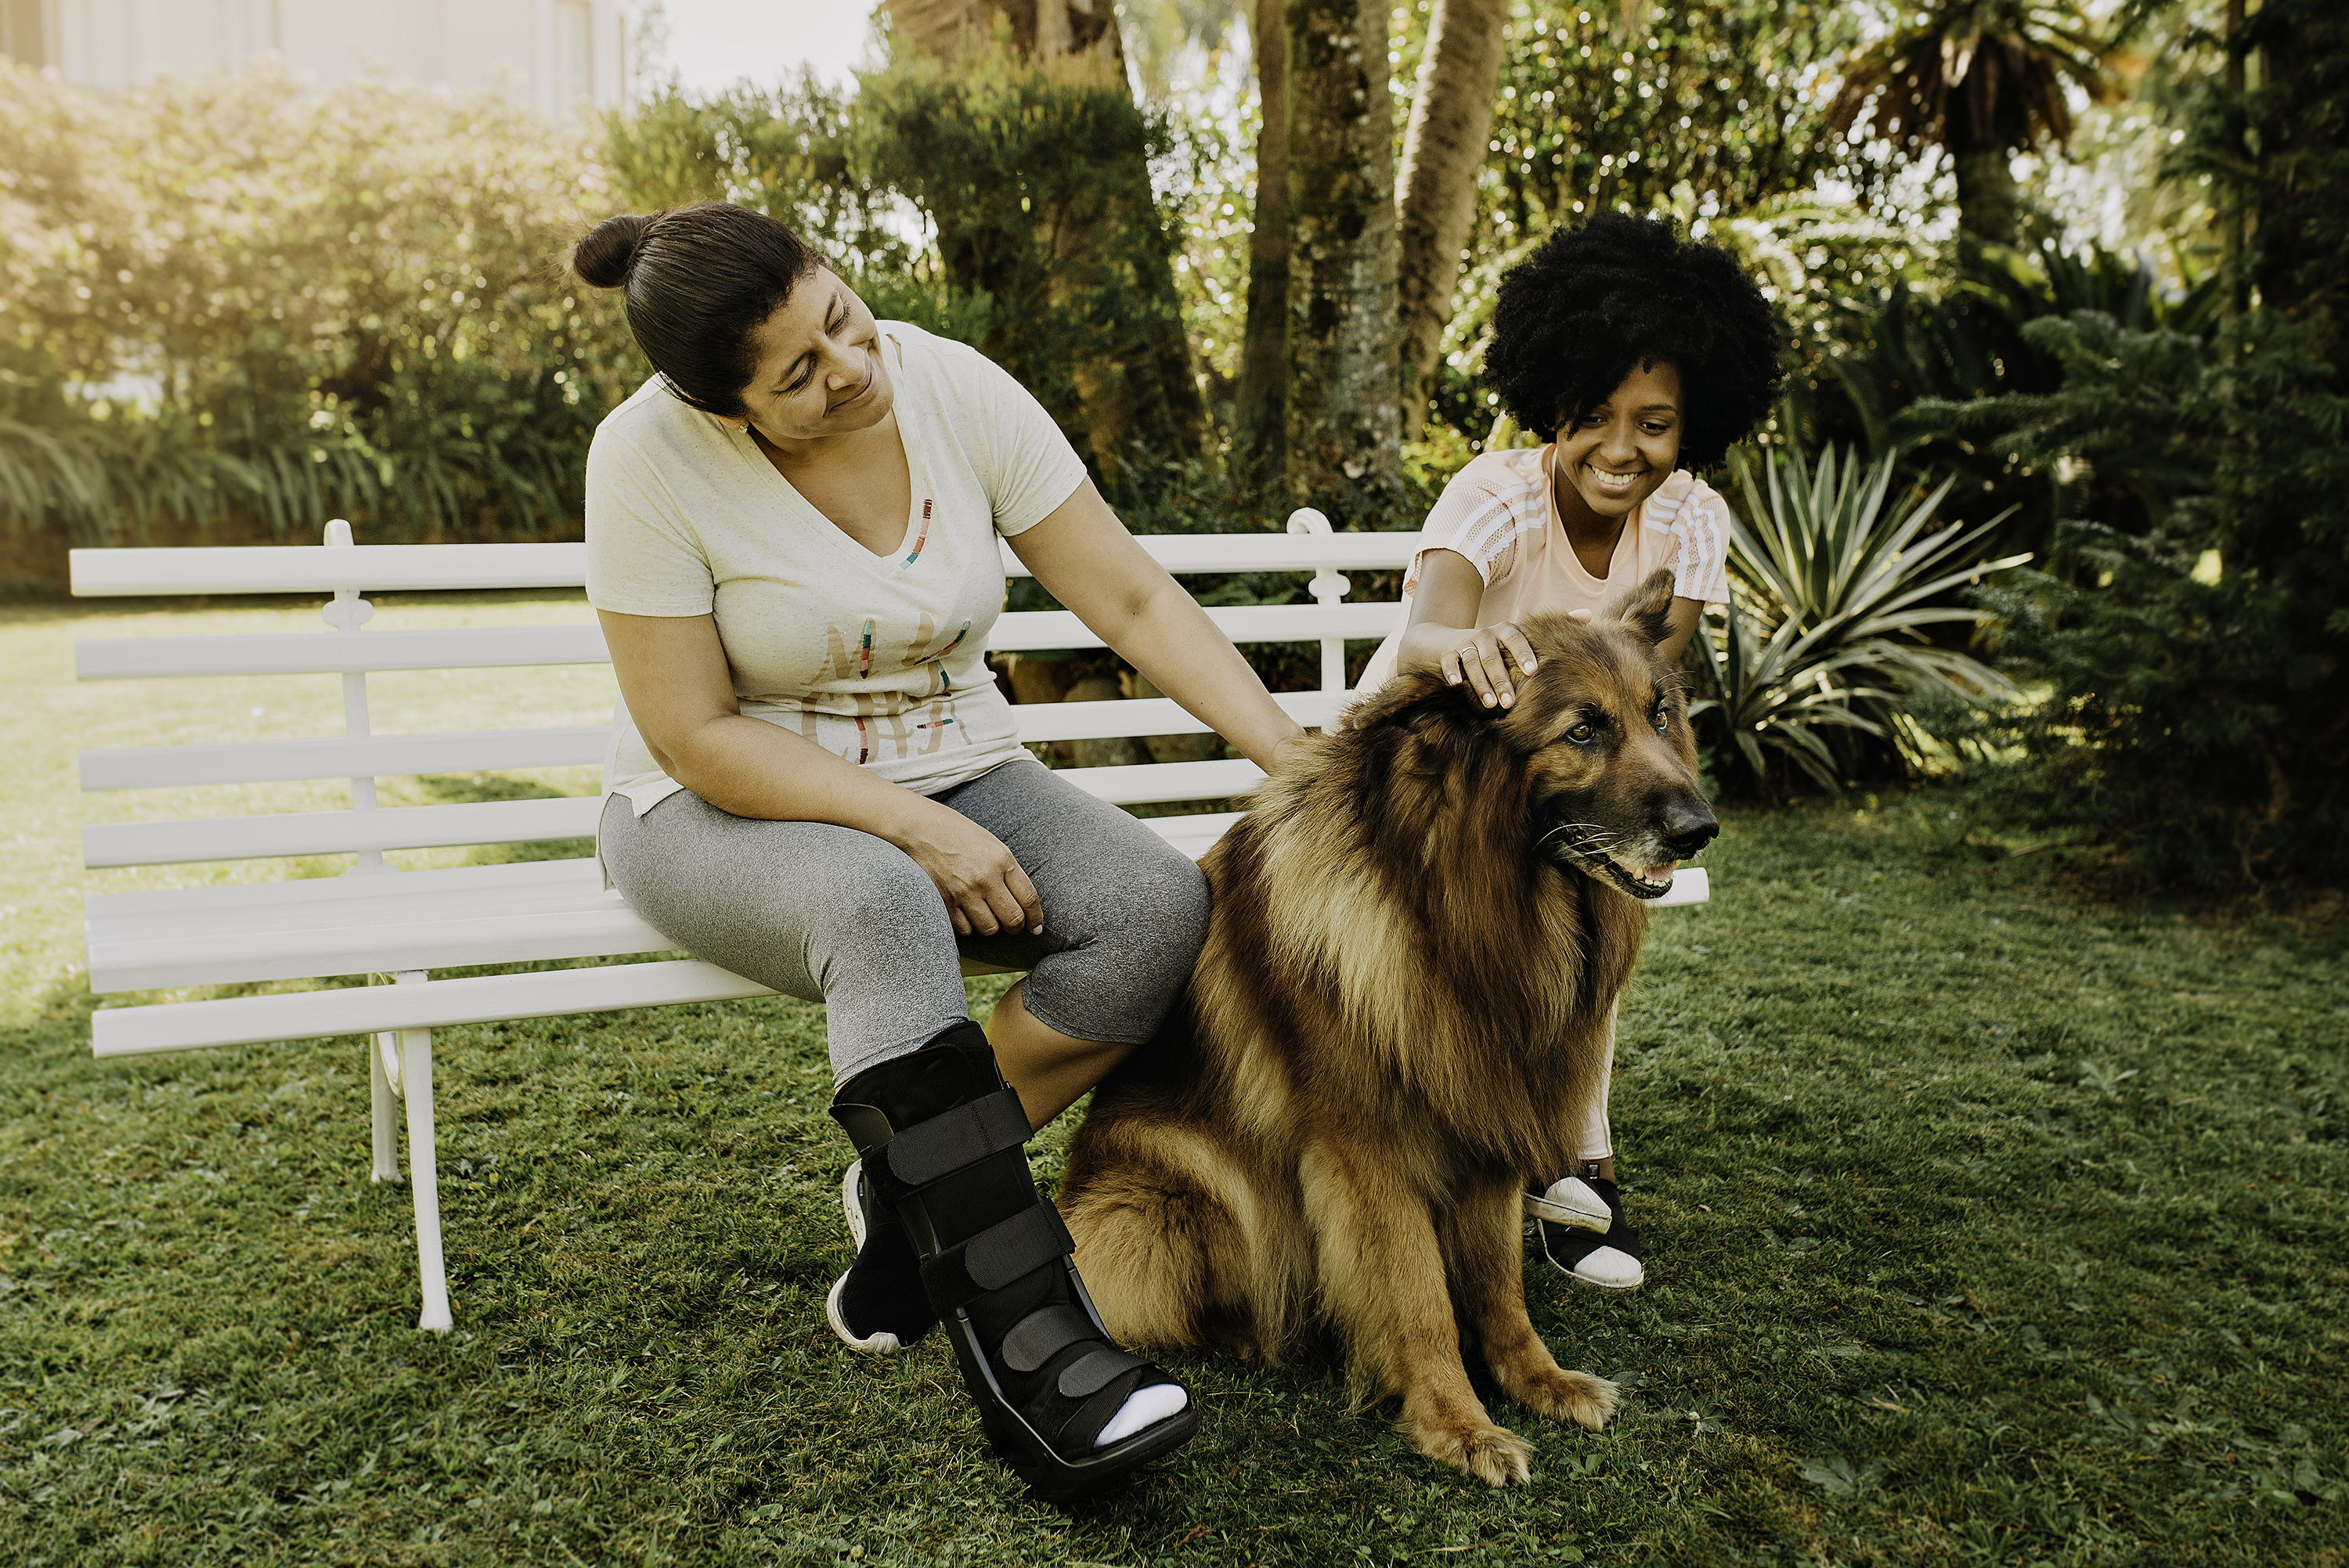 Duas mulheres estão sentadas lado a lado em um banco, ao ar livre. Elas estão sorrindo e acariciando um cachorro de grande porte que está sentado em frente a elas.